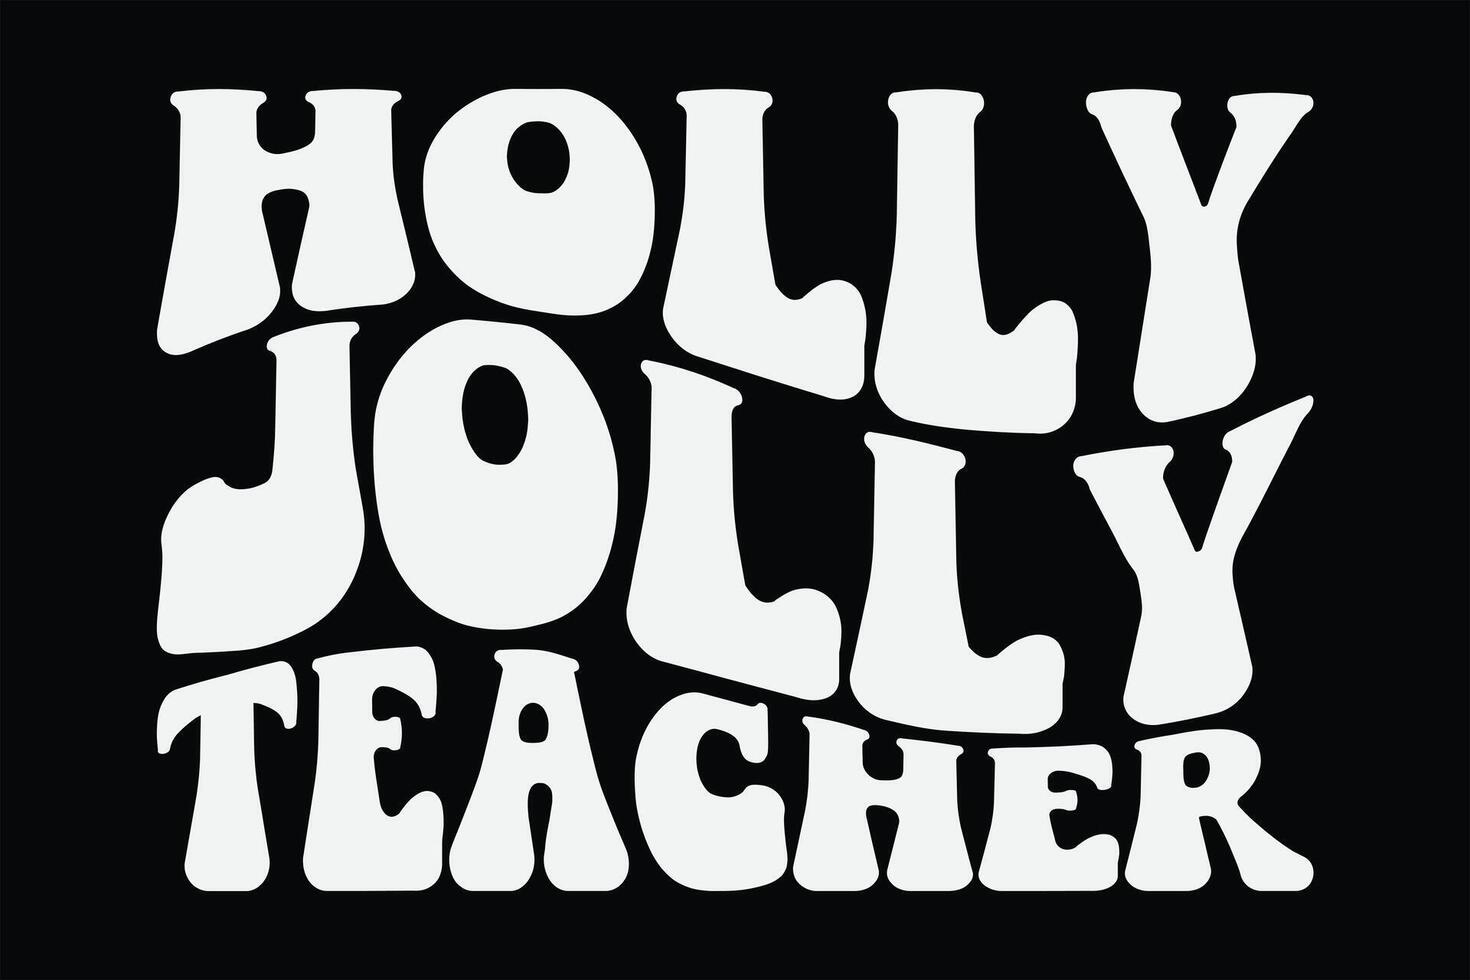 Holly Jolly Teacher Funny Groovy Wavy Christmas T-Shirt Design vector